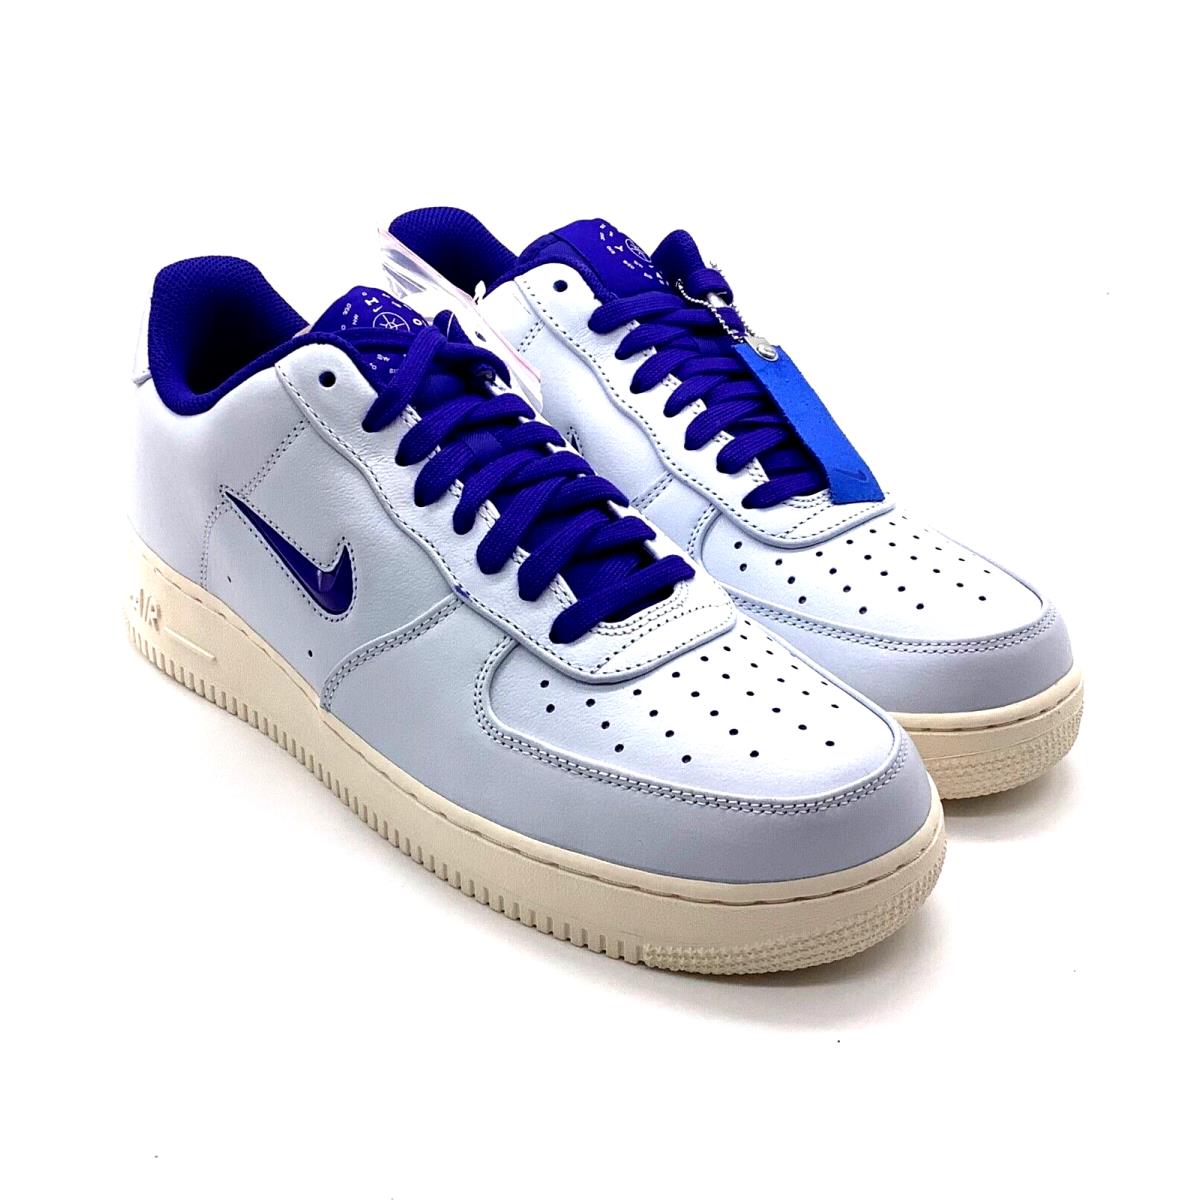 Nike Air Force 1 07 Prm Light Blue Leather Shoes CK4392-100 Men`s Size 11